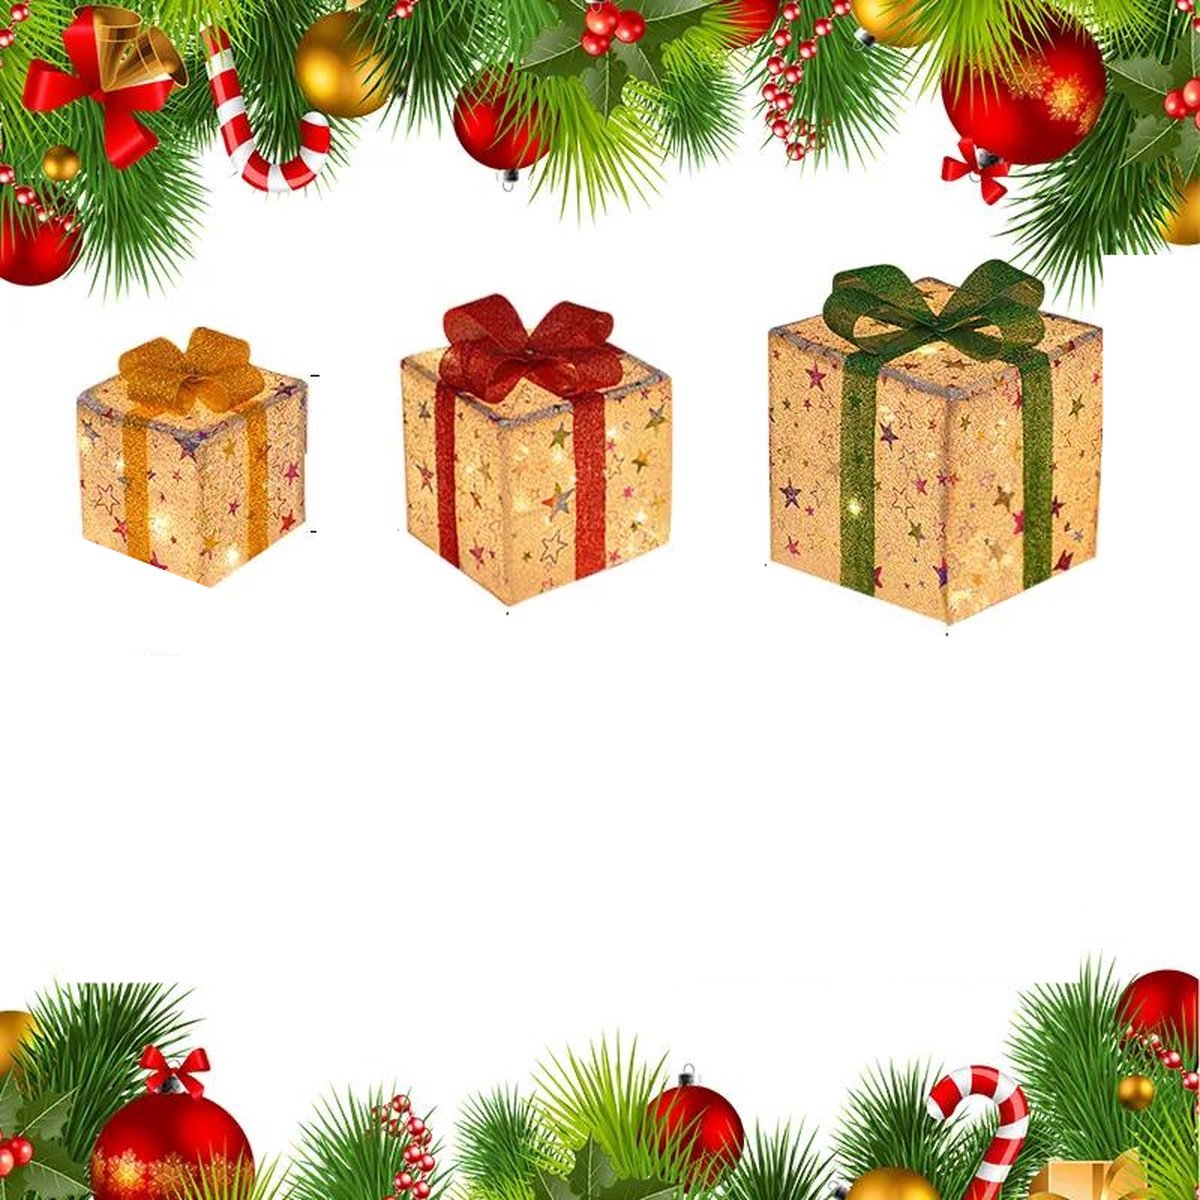 Jo-Jo Products 4U - Kerstverlichting - Set Van 3 Kerst Verlichte Geschenkdozen Met Strik -Geschenkdozen - Ornament Voor Kerst -Tuin - Gazon - Decoratie